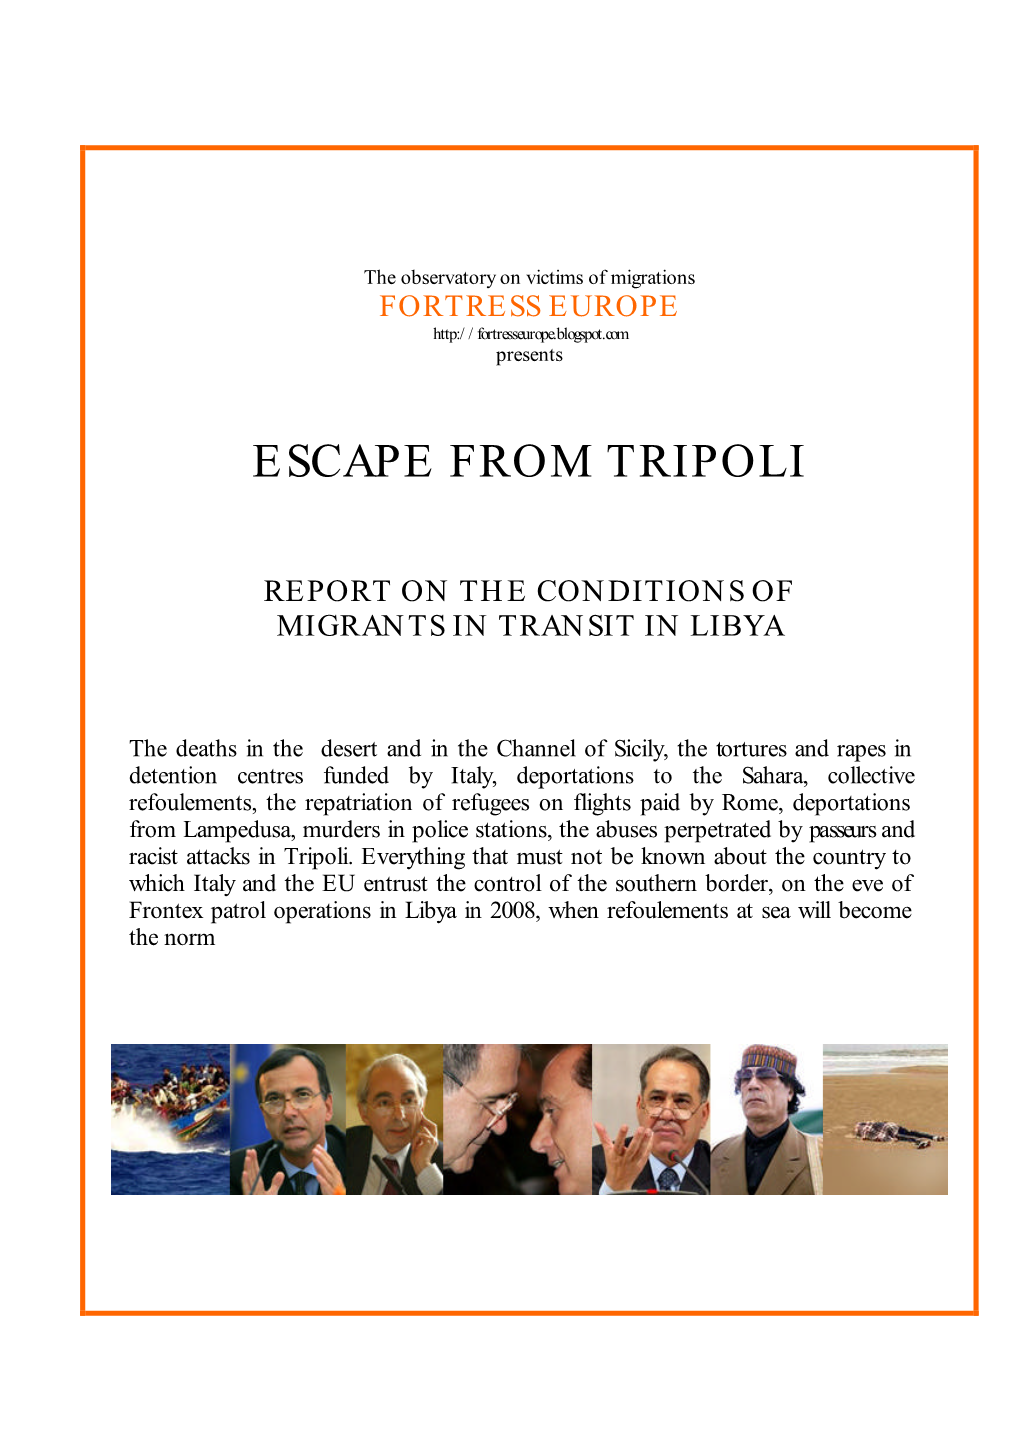 Escape from Tripoli